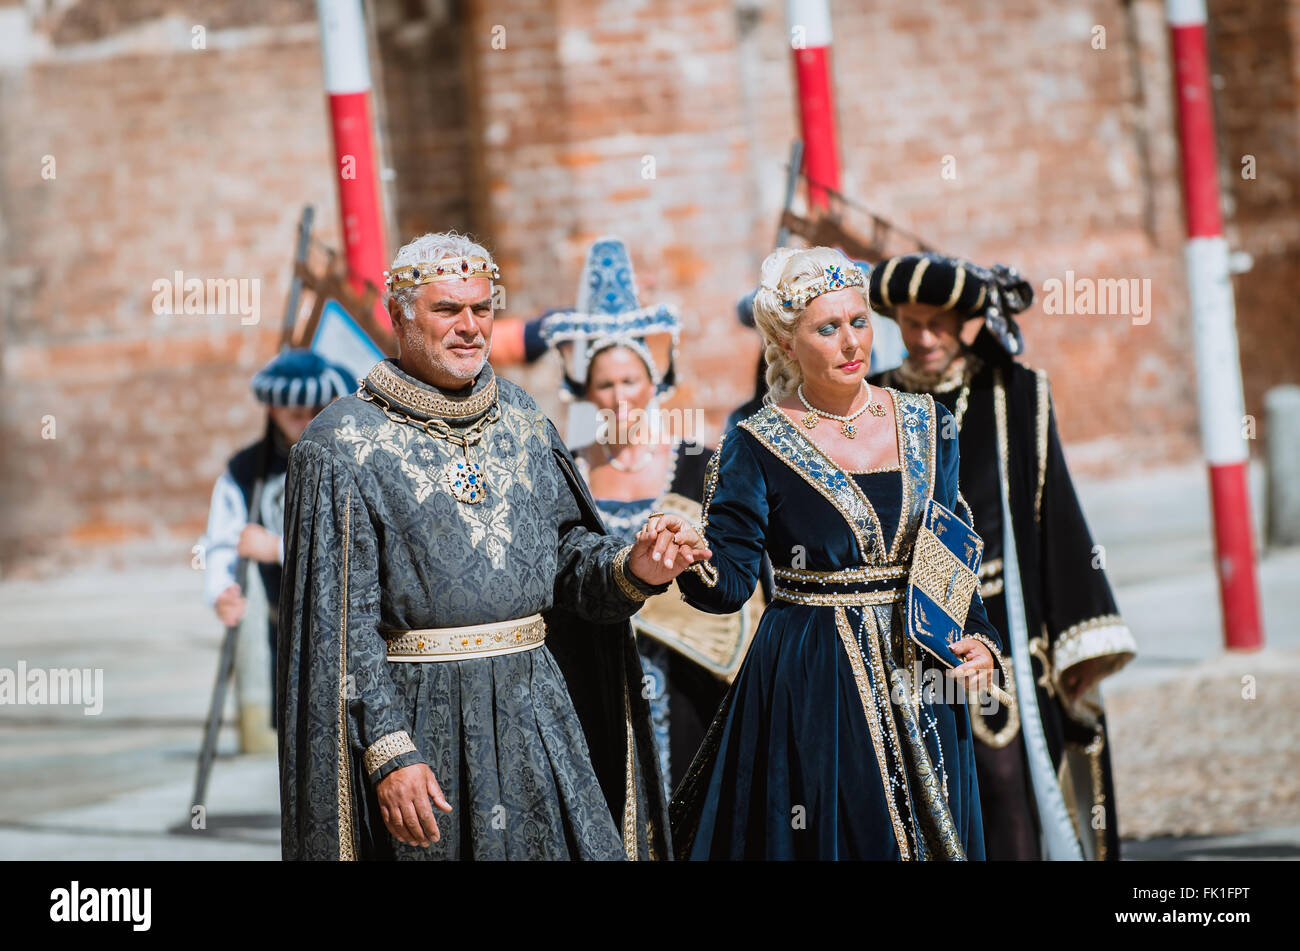 Asti, Italia - 16 Settembre 2012: coppia di nobili in costume medievale in corteo storico il giorno del Palio di Asti, Foto Stock